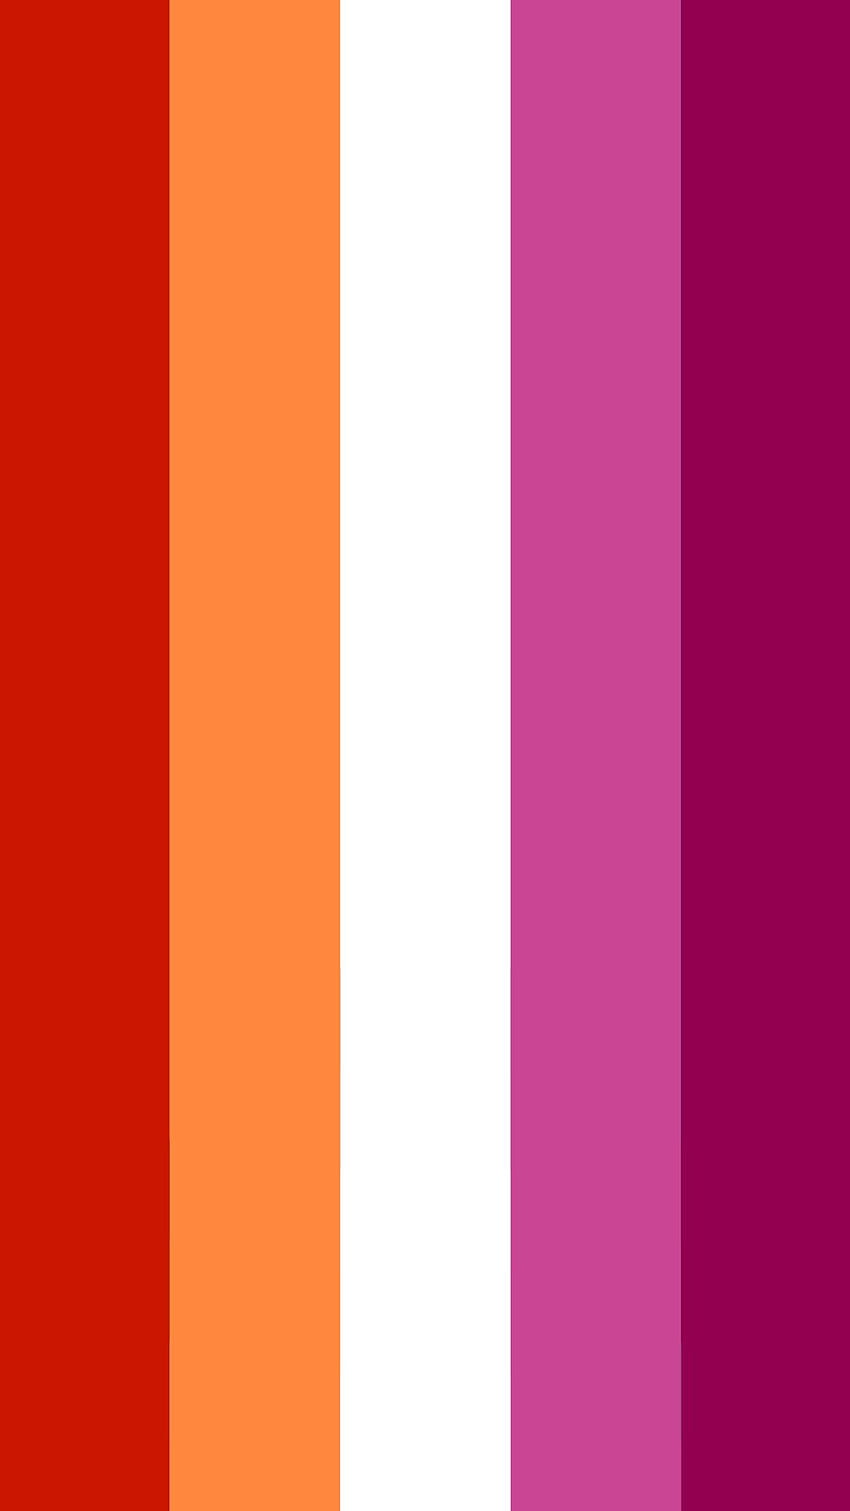 Bandera del orgullo lésbico en 2021. Banderas del orgullo, orgullo lésbico estético del iphone, teléfono del orgullo lésbico, bandera del orgullo LGBT fondo de pantalla del teléfono